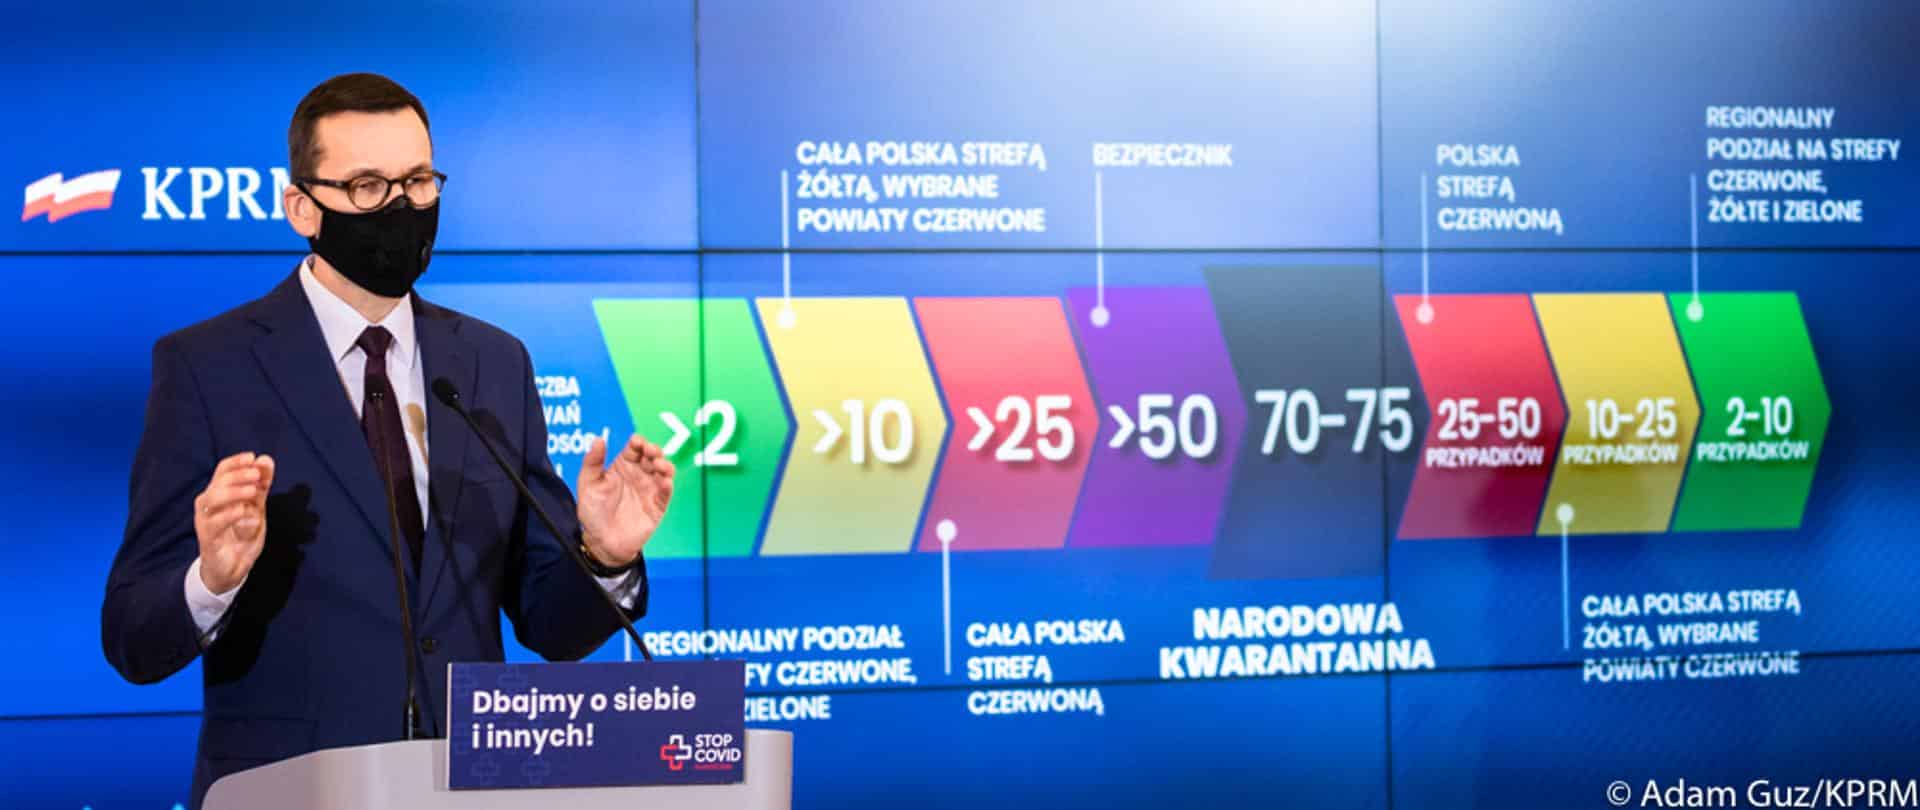 Premier Mateusz Morawiecki ostrzega przed 3 falą